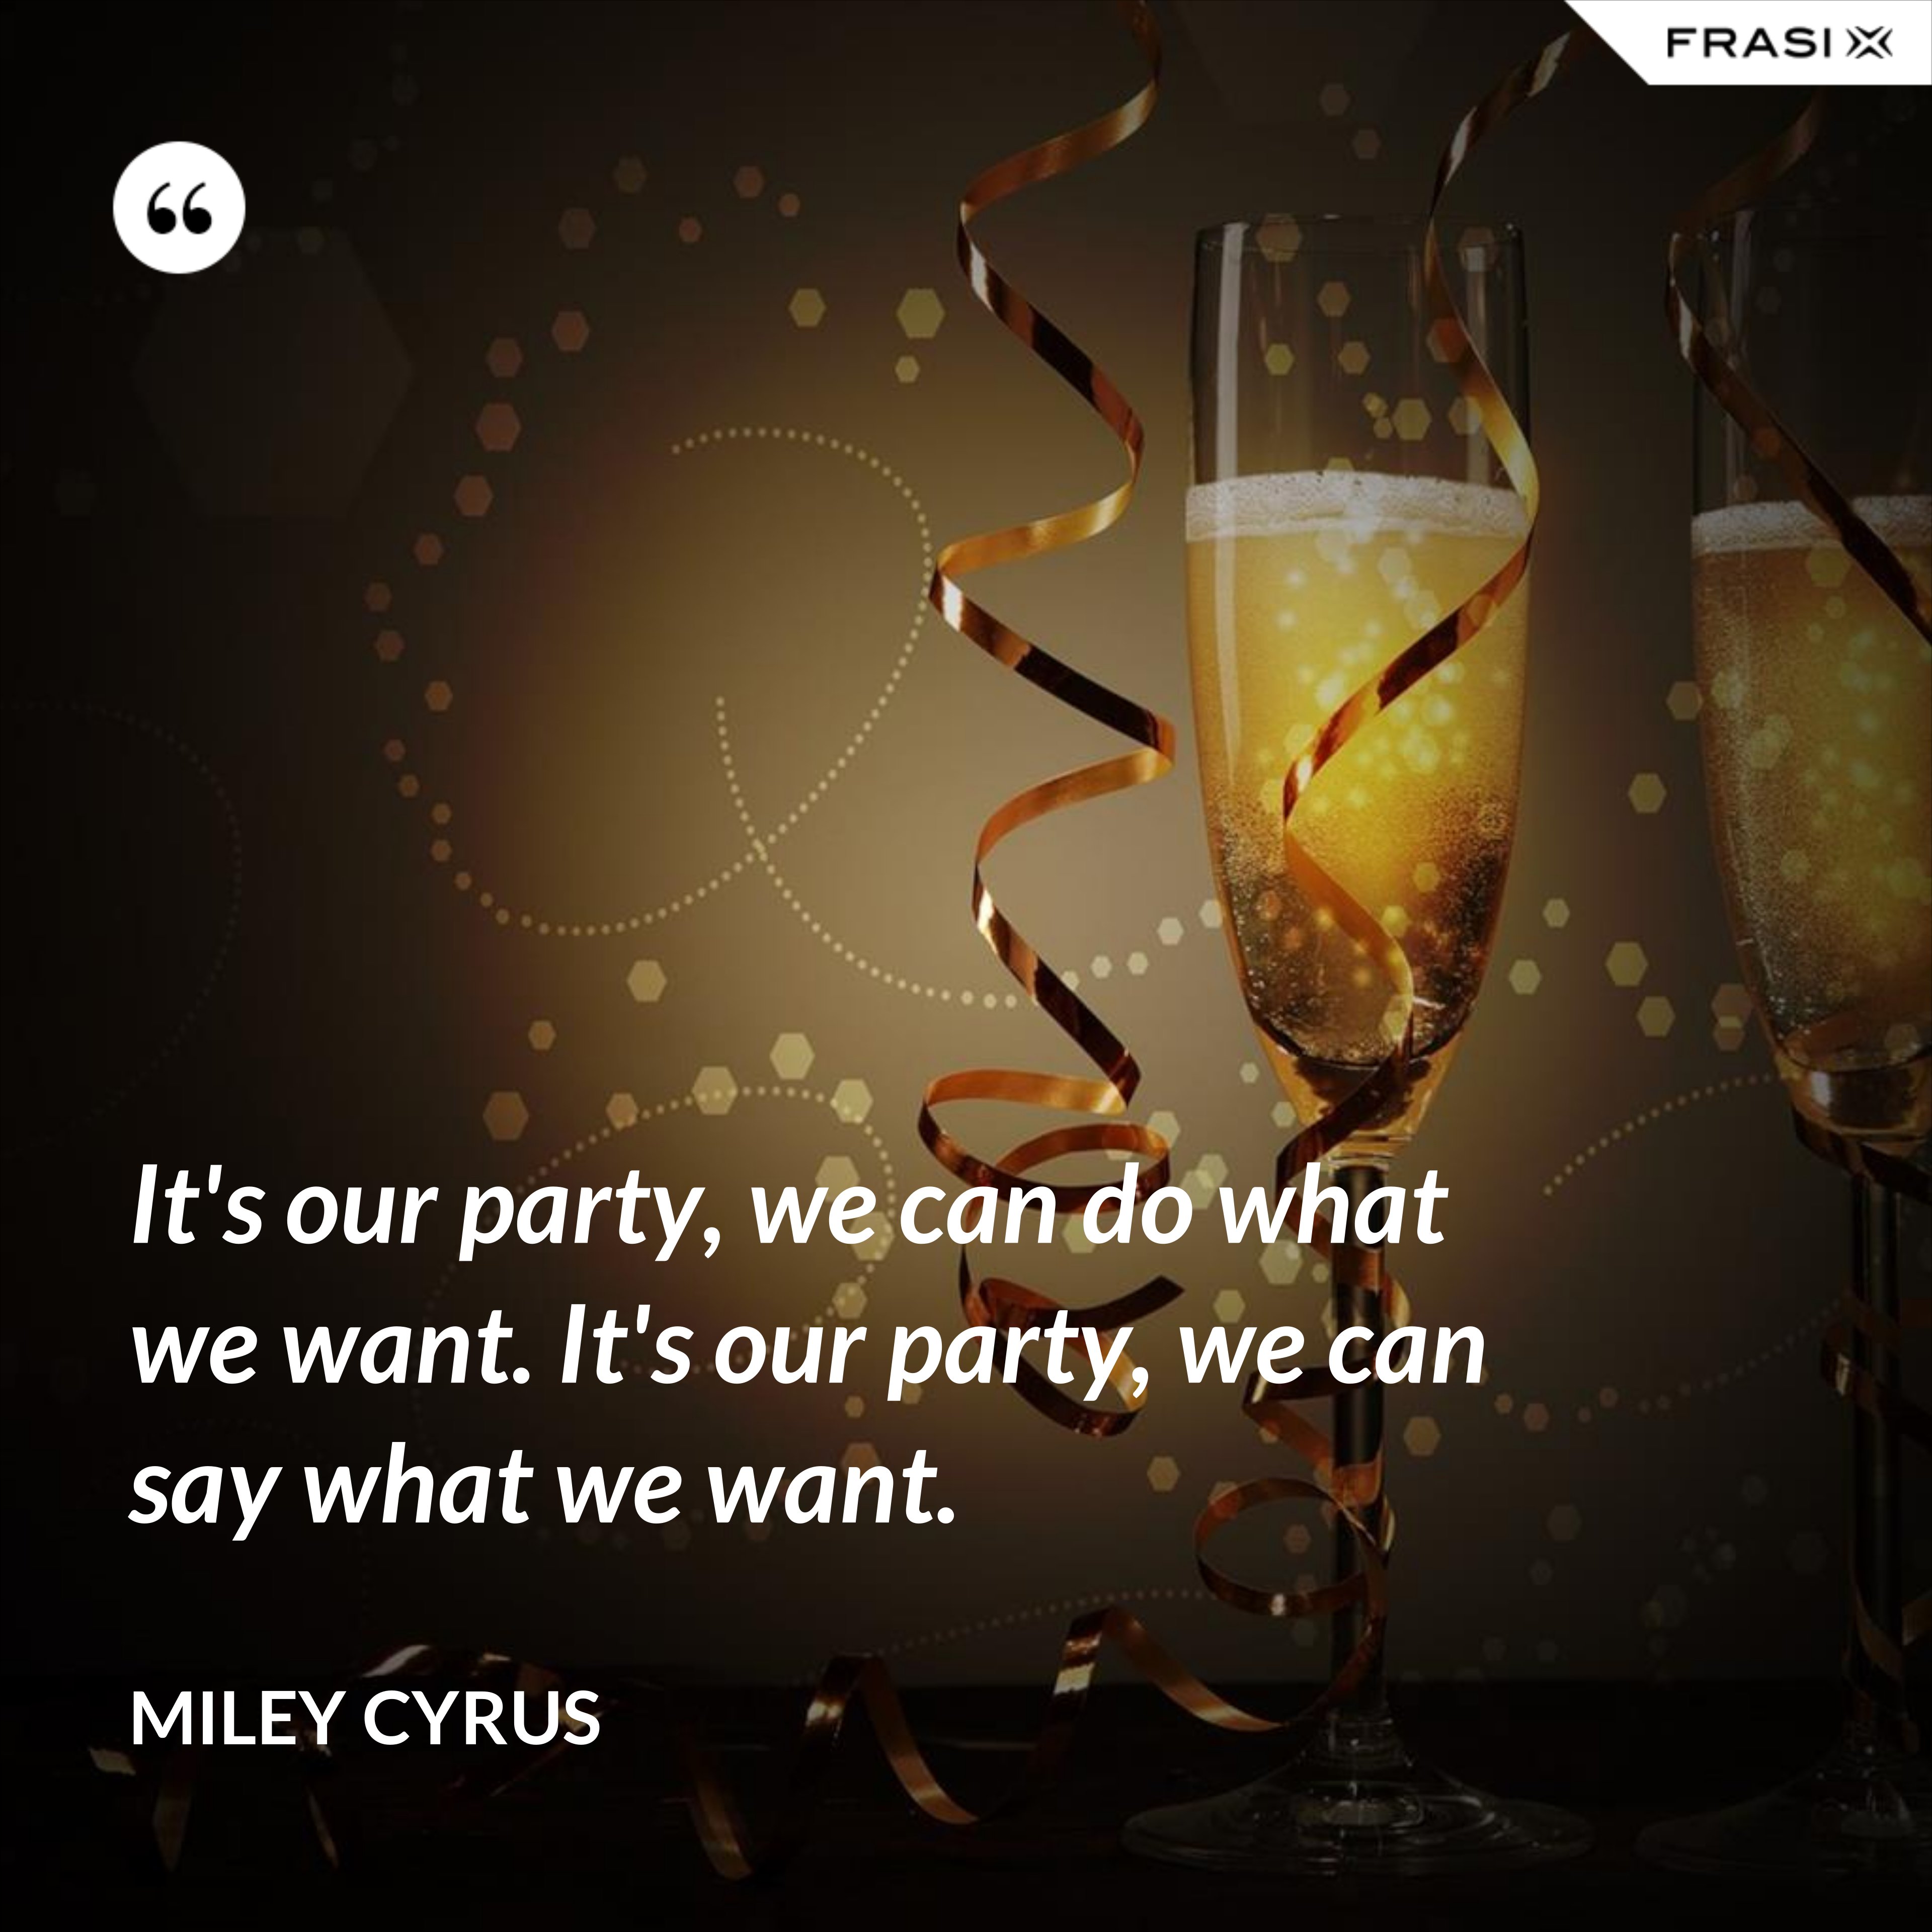 It's our party, we can do what we want. It's our party, we can say what we want. - Miley Cyrus